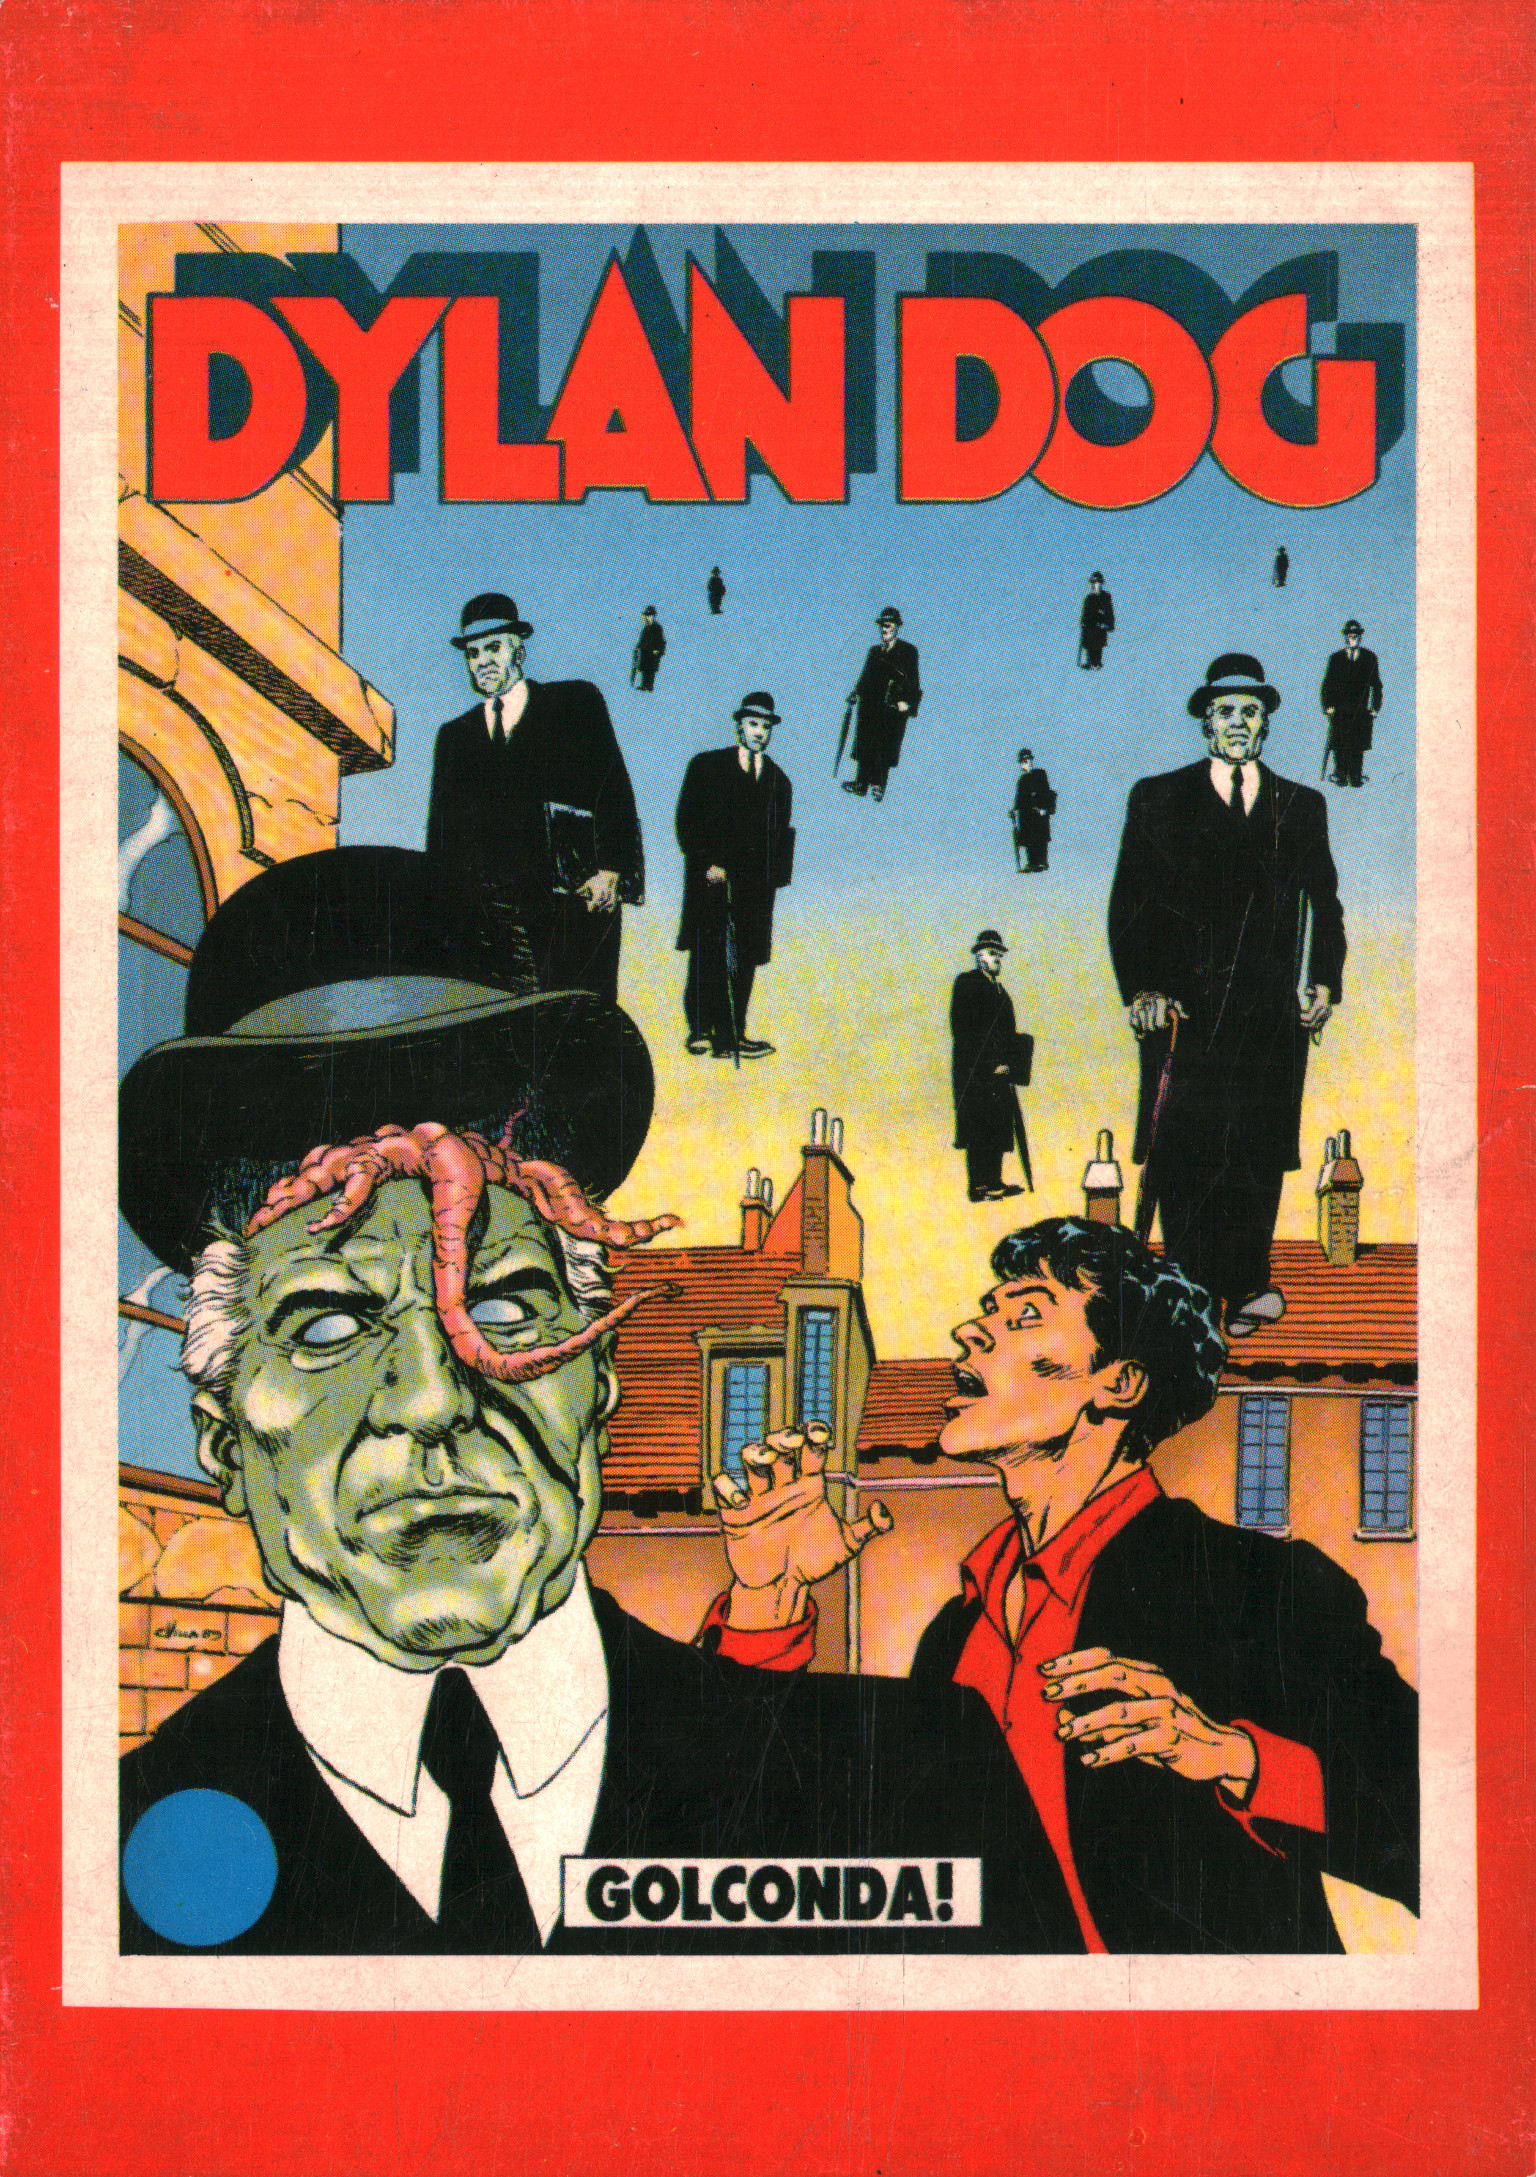 Dylan Dog Postkarten, Dylan Dog (Postkarten)